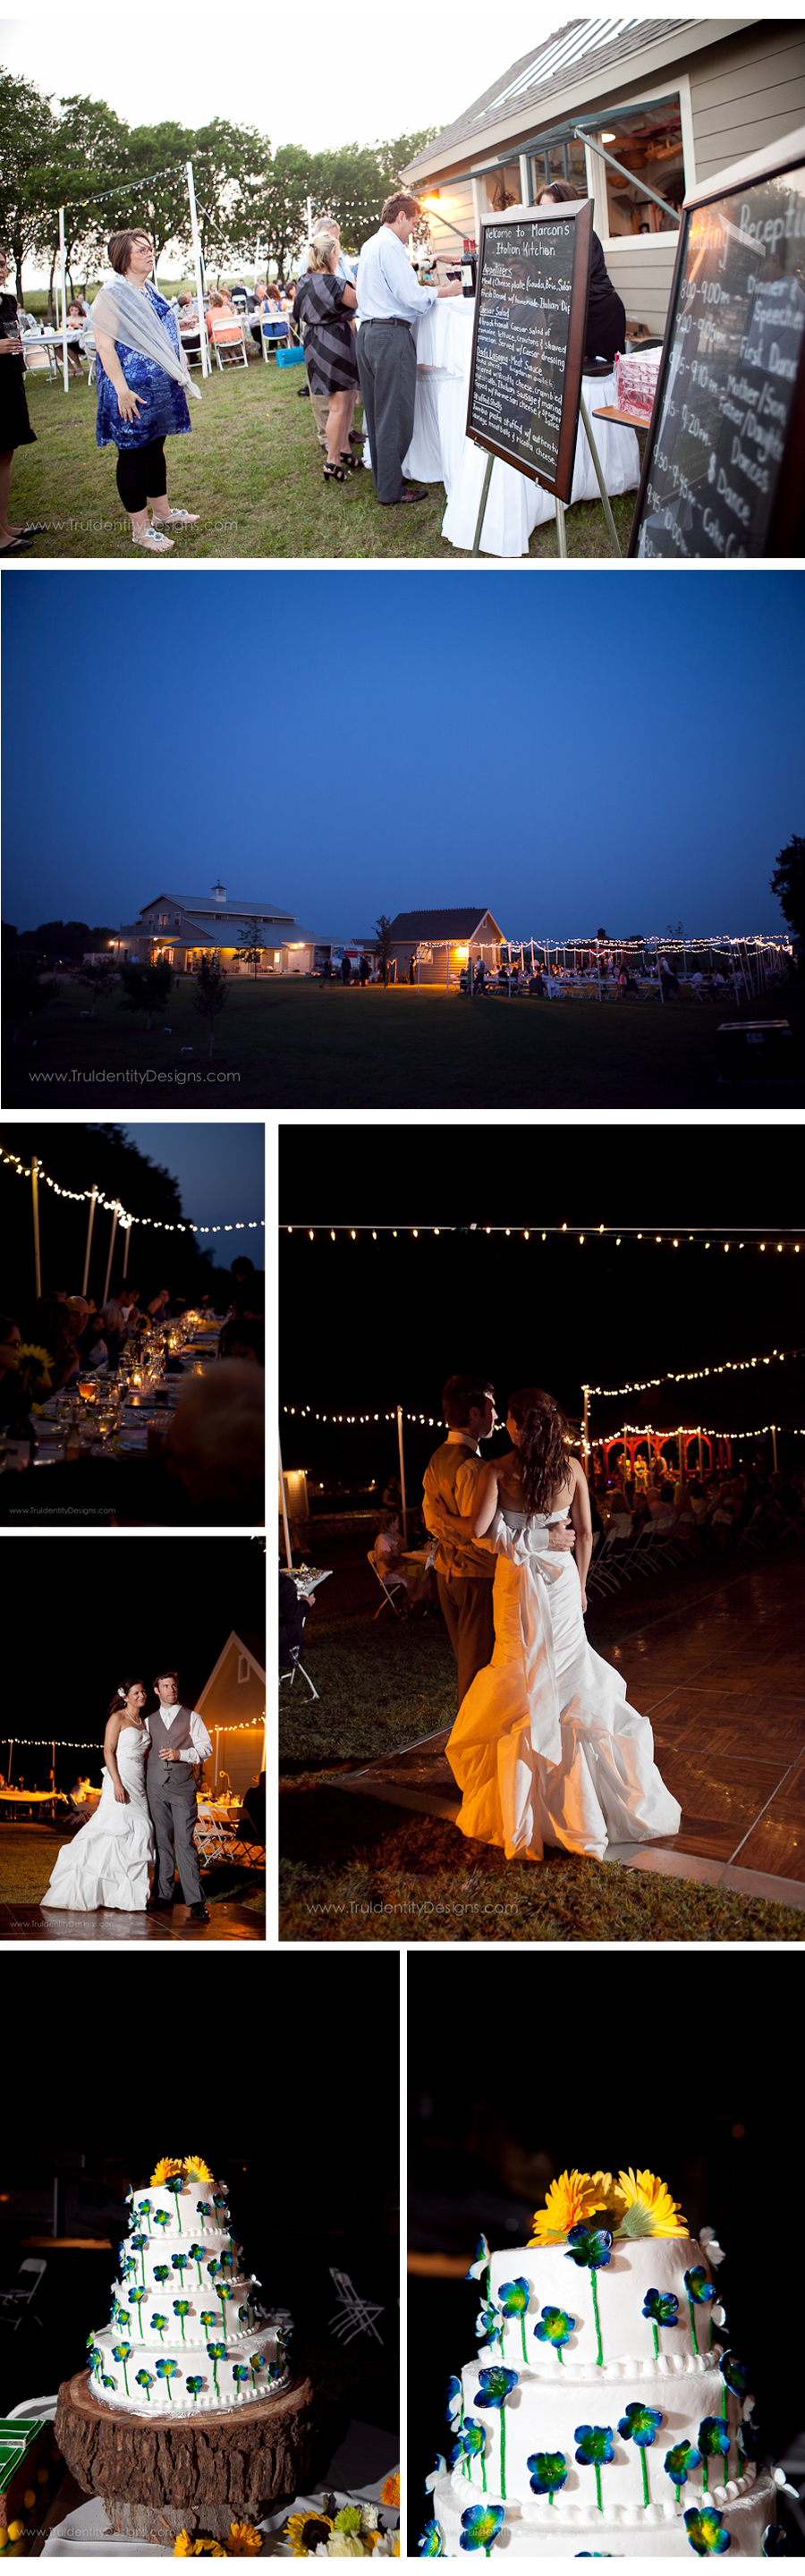 Eden Hill Farm and Vineyard wedding reception photos